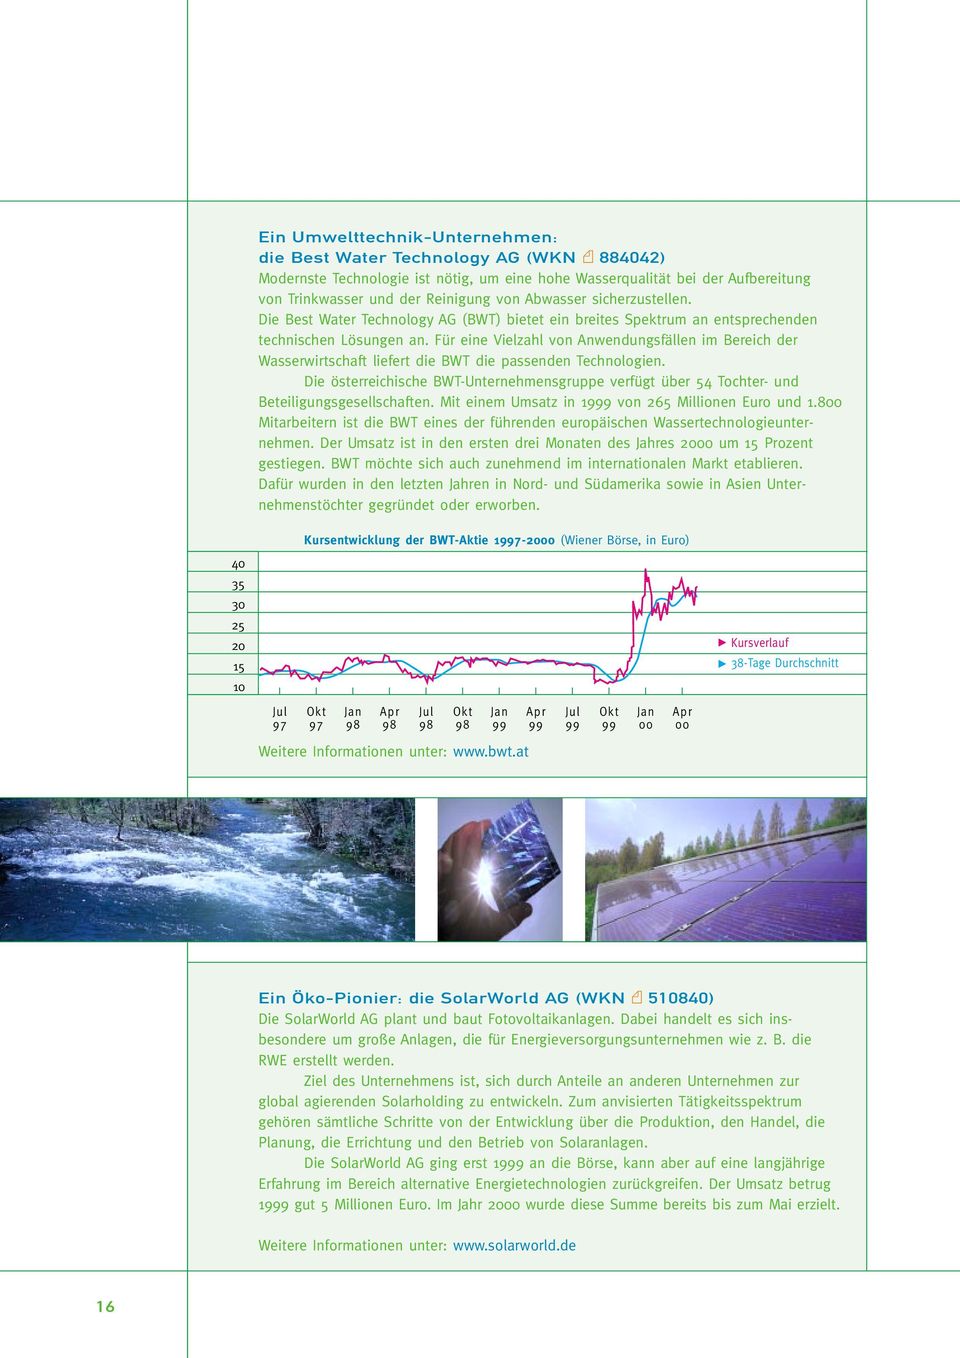 Für eine Vielzahl von Anwendungsfällen im Bereich der Wasserwirtschaft liefert die BWT die passenden Technologien.